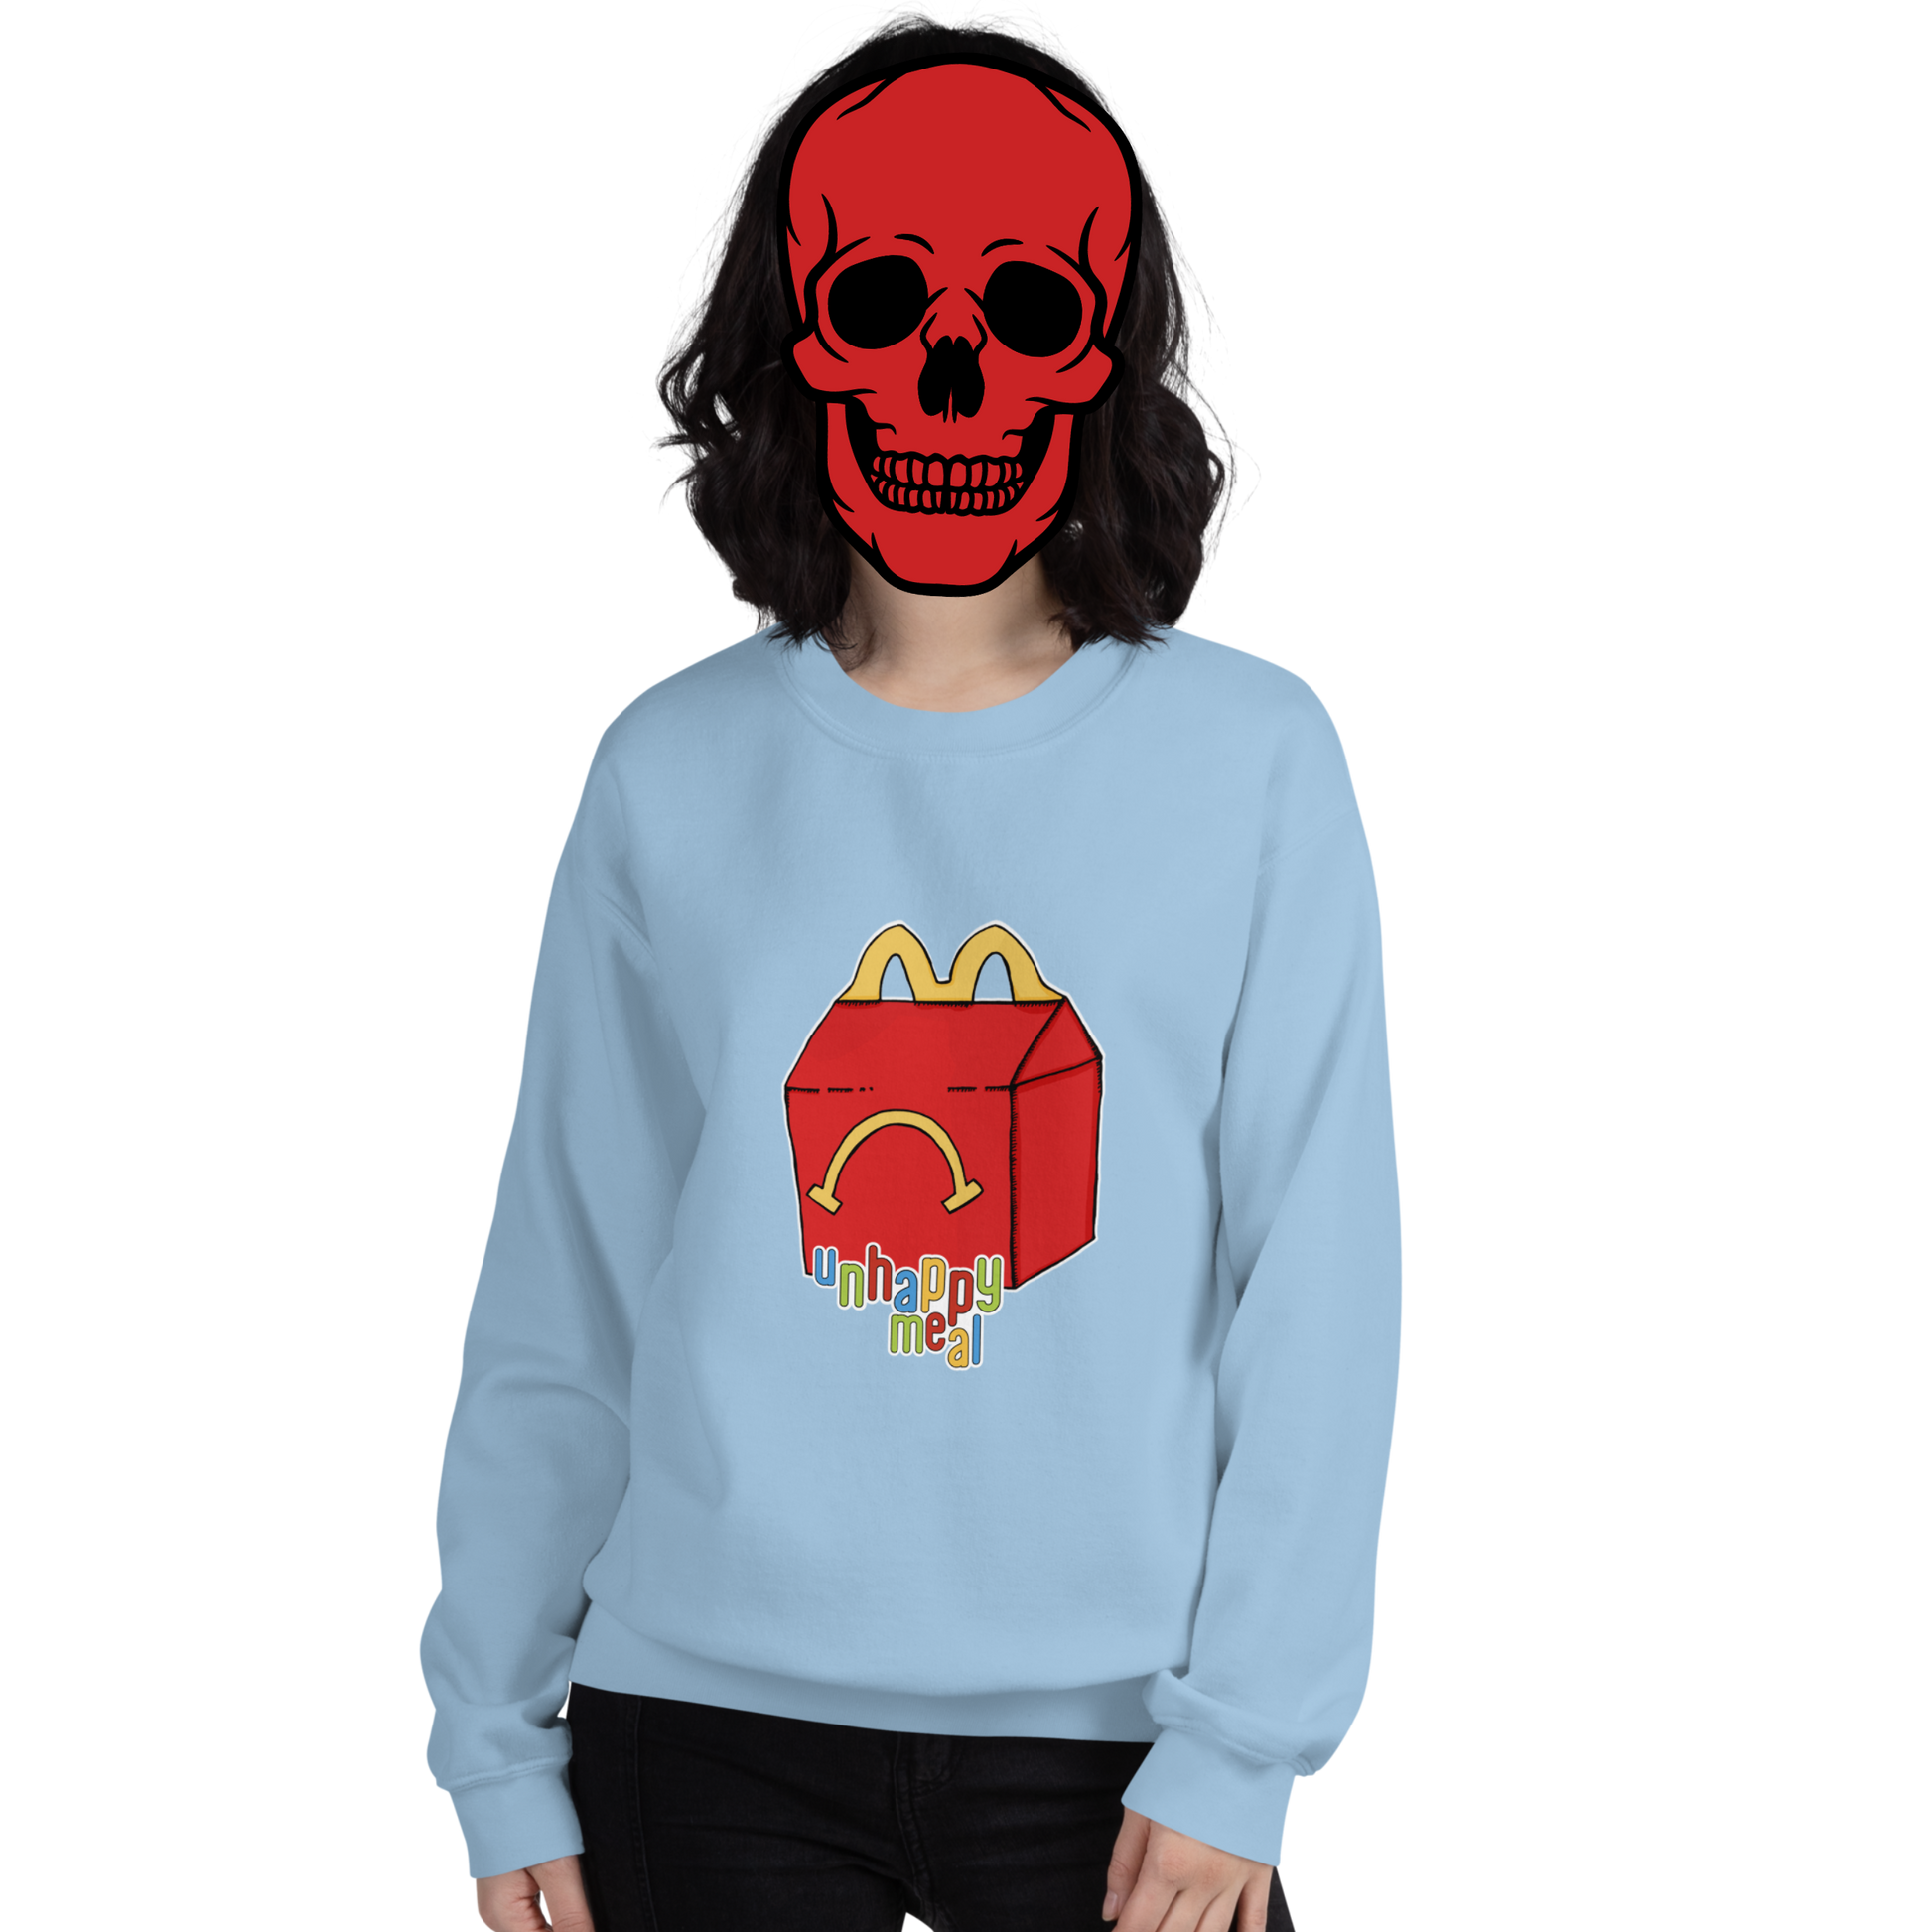 unhappy meal sweatshirt model in light blue - gaslit apparel